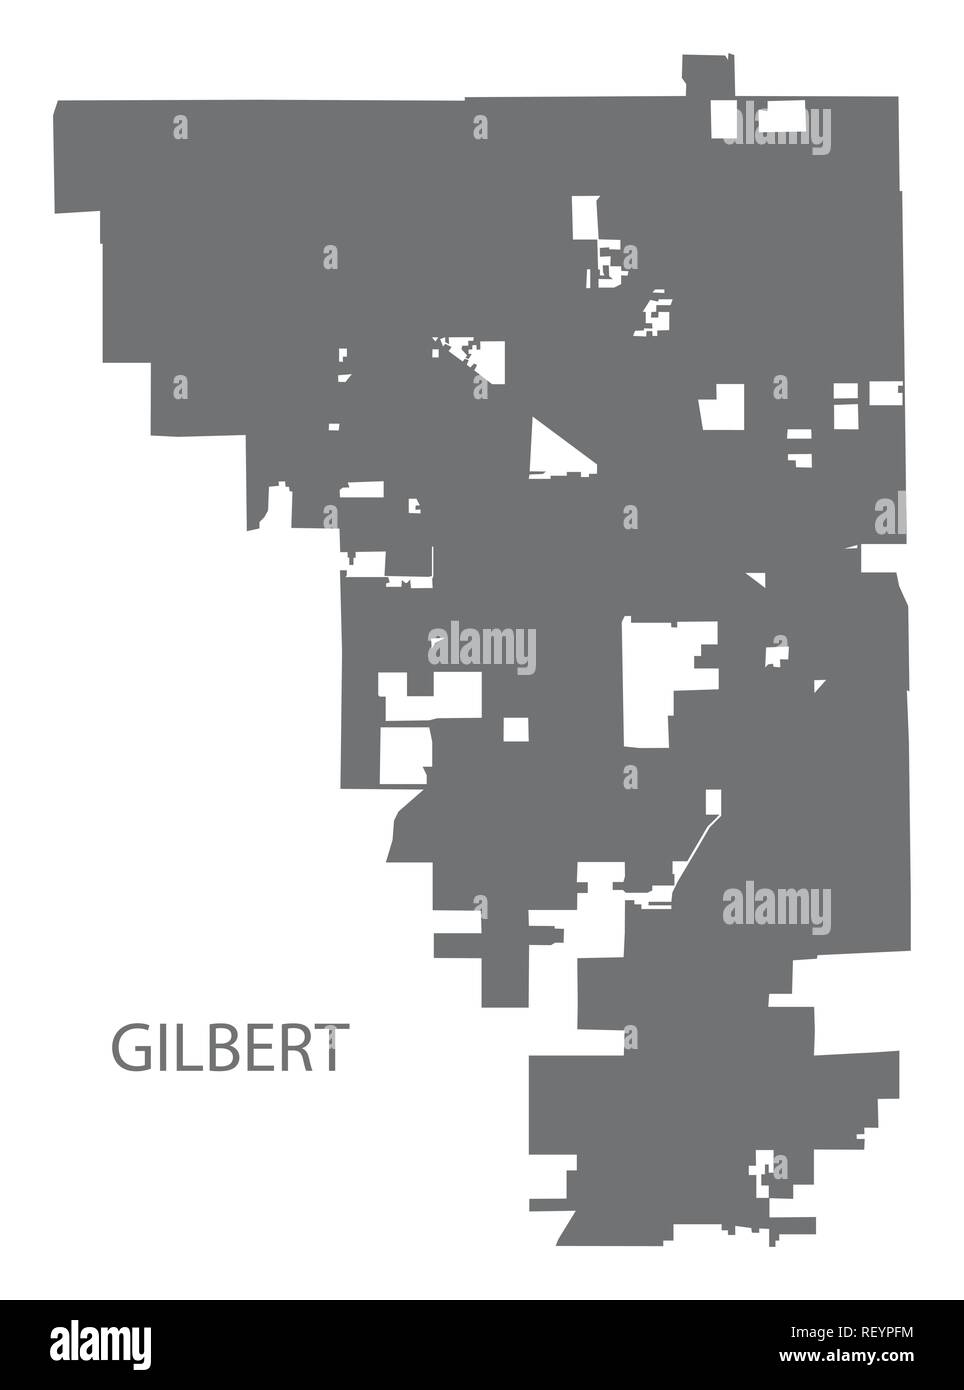 Plan de la ville de l'Arizona Gilbert gris illustration silhouette Illustration de Vecteur